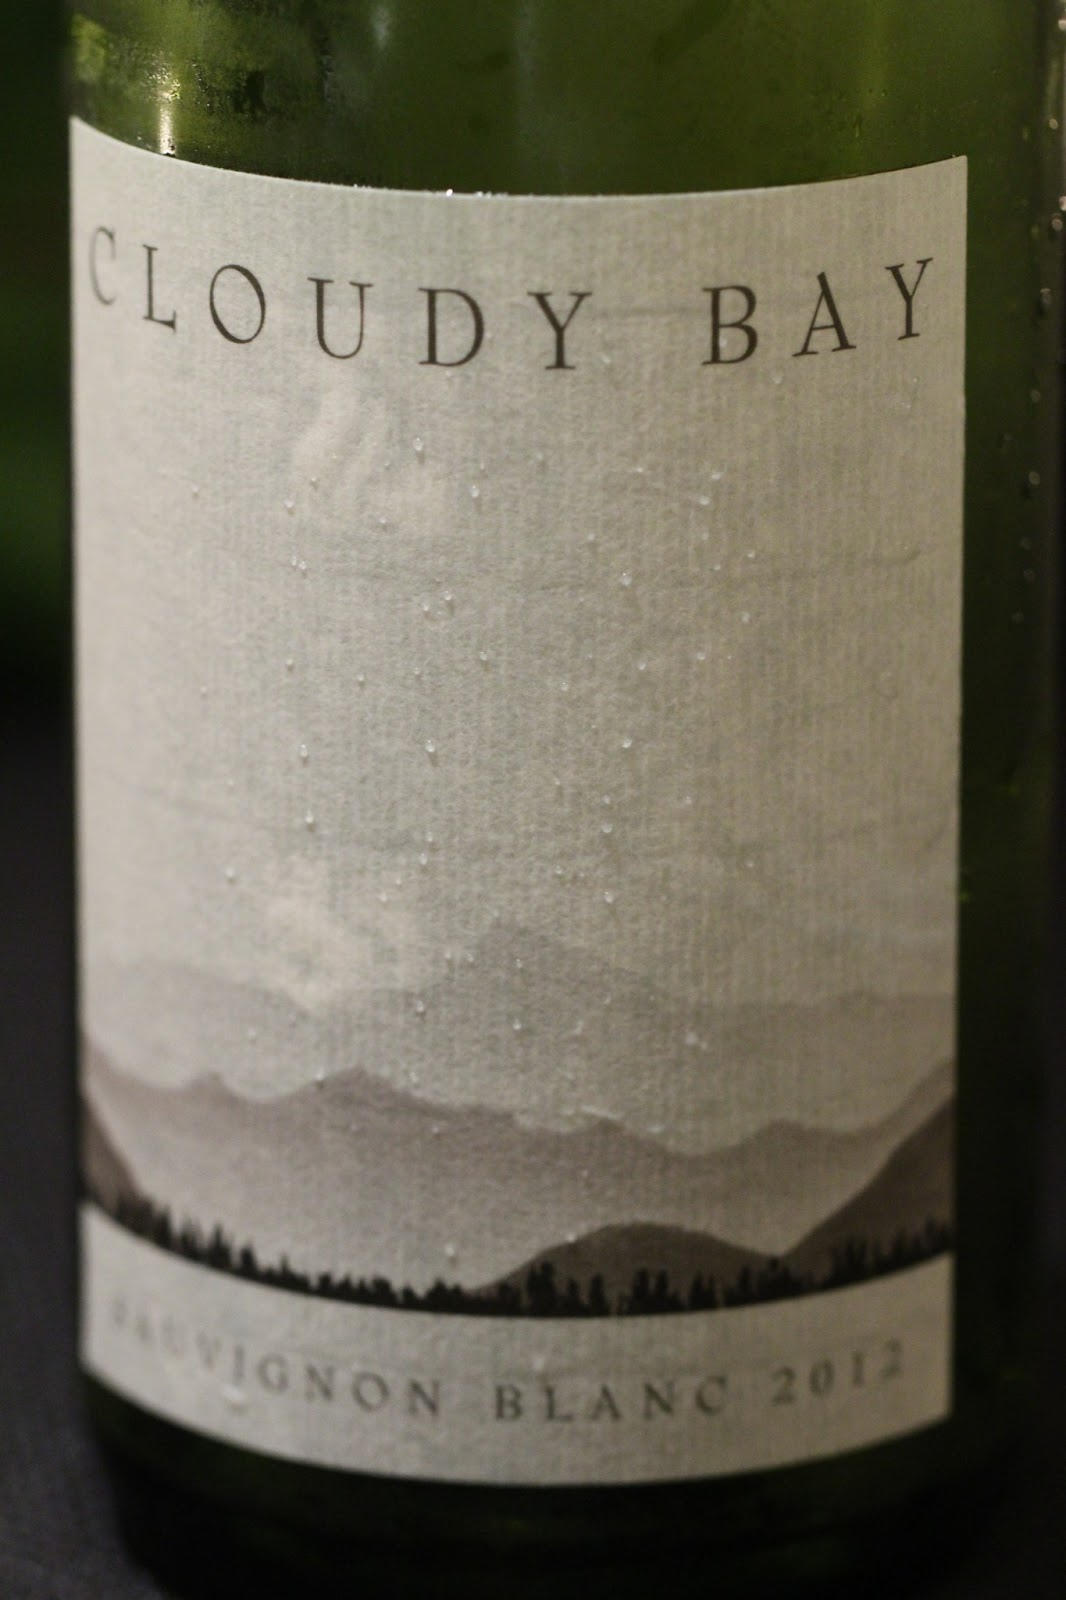 Cloudy Bay Sauvignon Blanc 2006